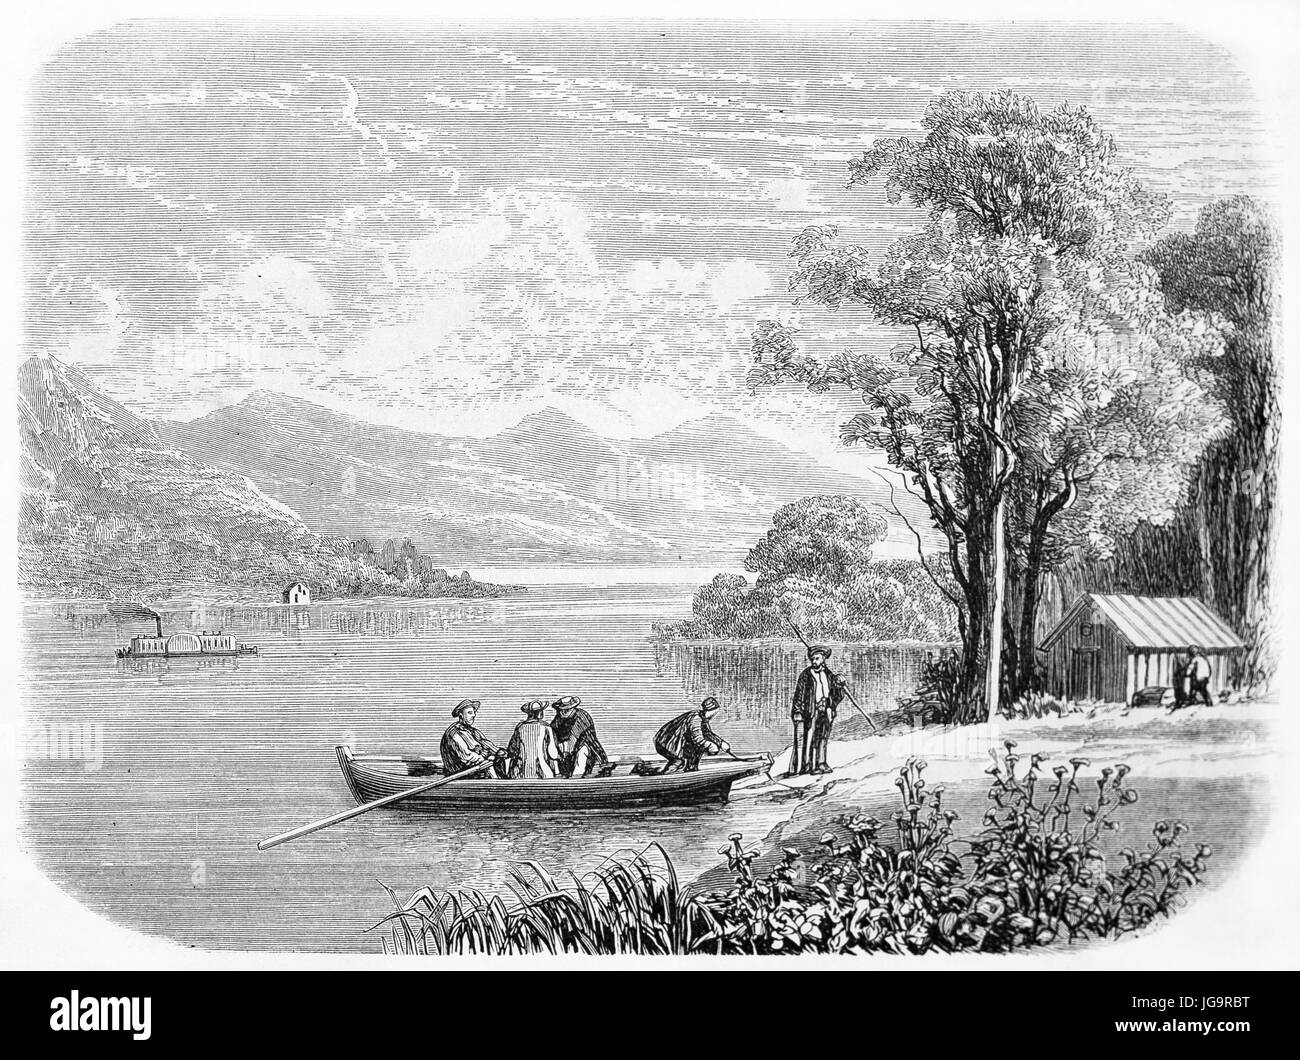 Alte Ansicht des Lake Champlain, Vereinigte Staaten von Amerika. Erstellt von Grandsire nach Deville, veröffentlicht am Le Tour du Monde, Paris, 1861 Stockfoto